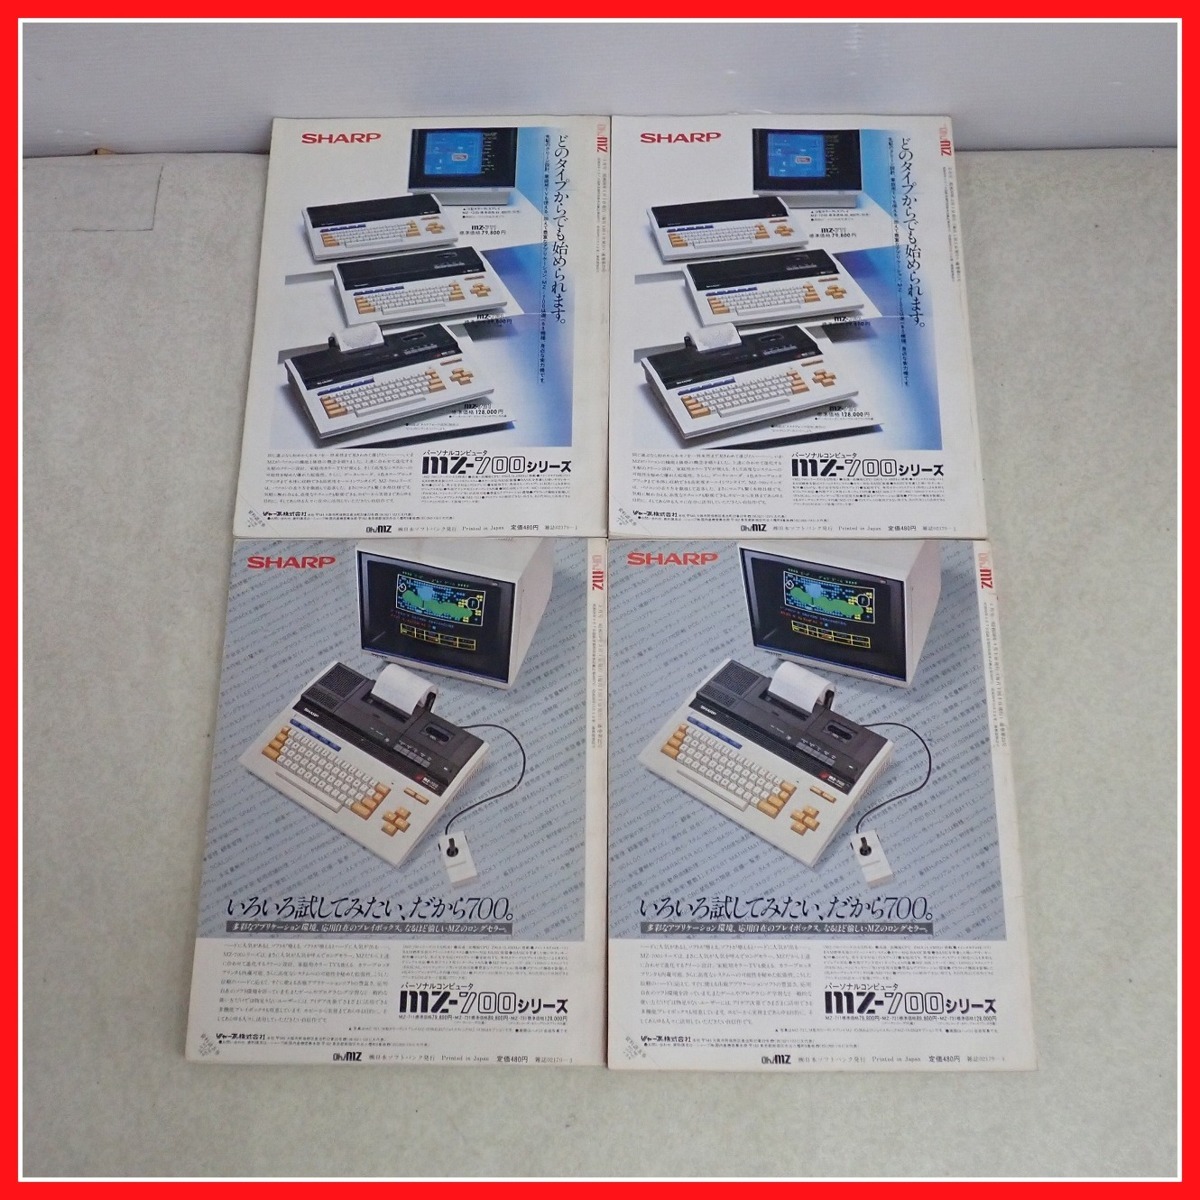 * журнал Oh!MZ/o-! M Z 1984 год 1~12 месяц номер совместно комплект персональный компьютер информация журнал SHARP MZ/X1/ карманный компьютер серии относящийся Япония SoftBank [20